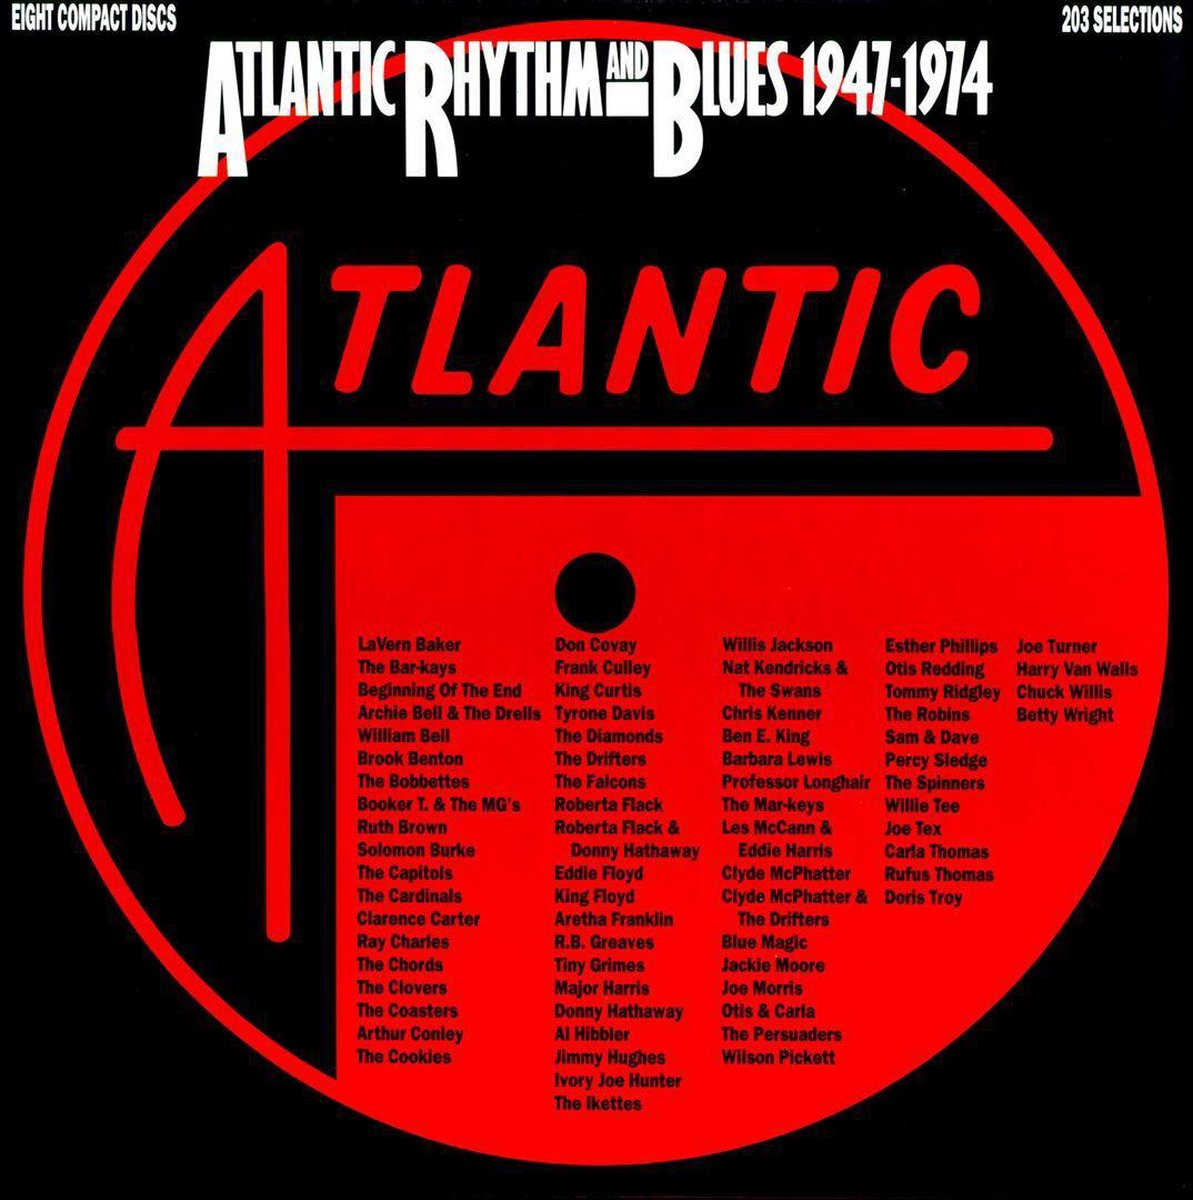 Atlantic Rhythm & Blues: 1947-1974 - various artists